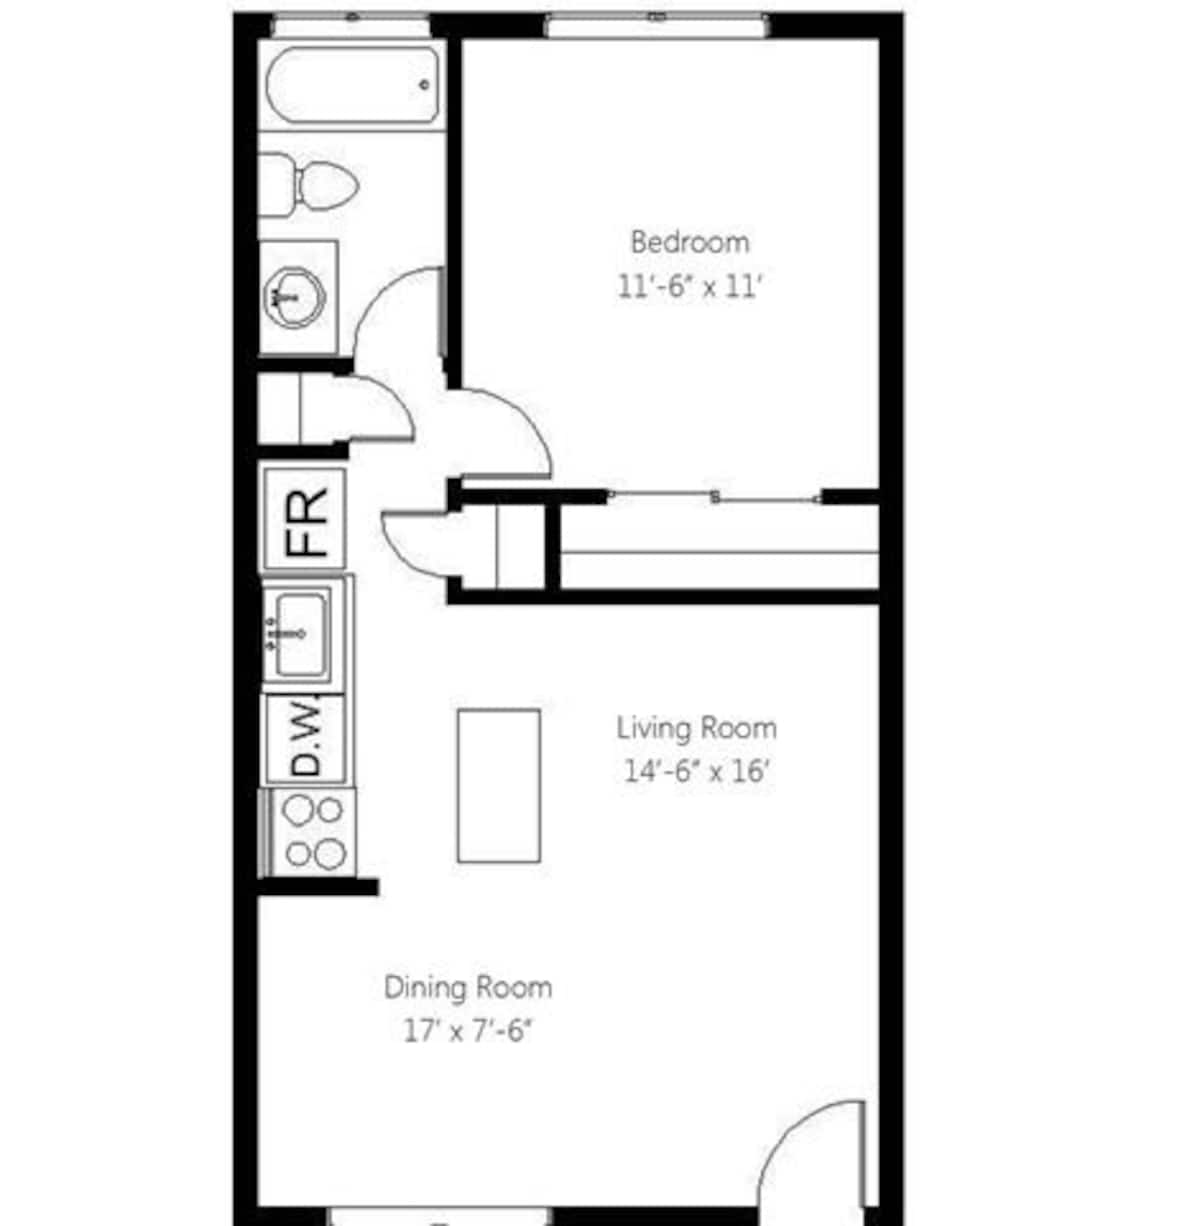 Floorplan diagram for Broadmoor, showing 1 bedroom